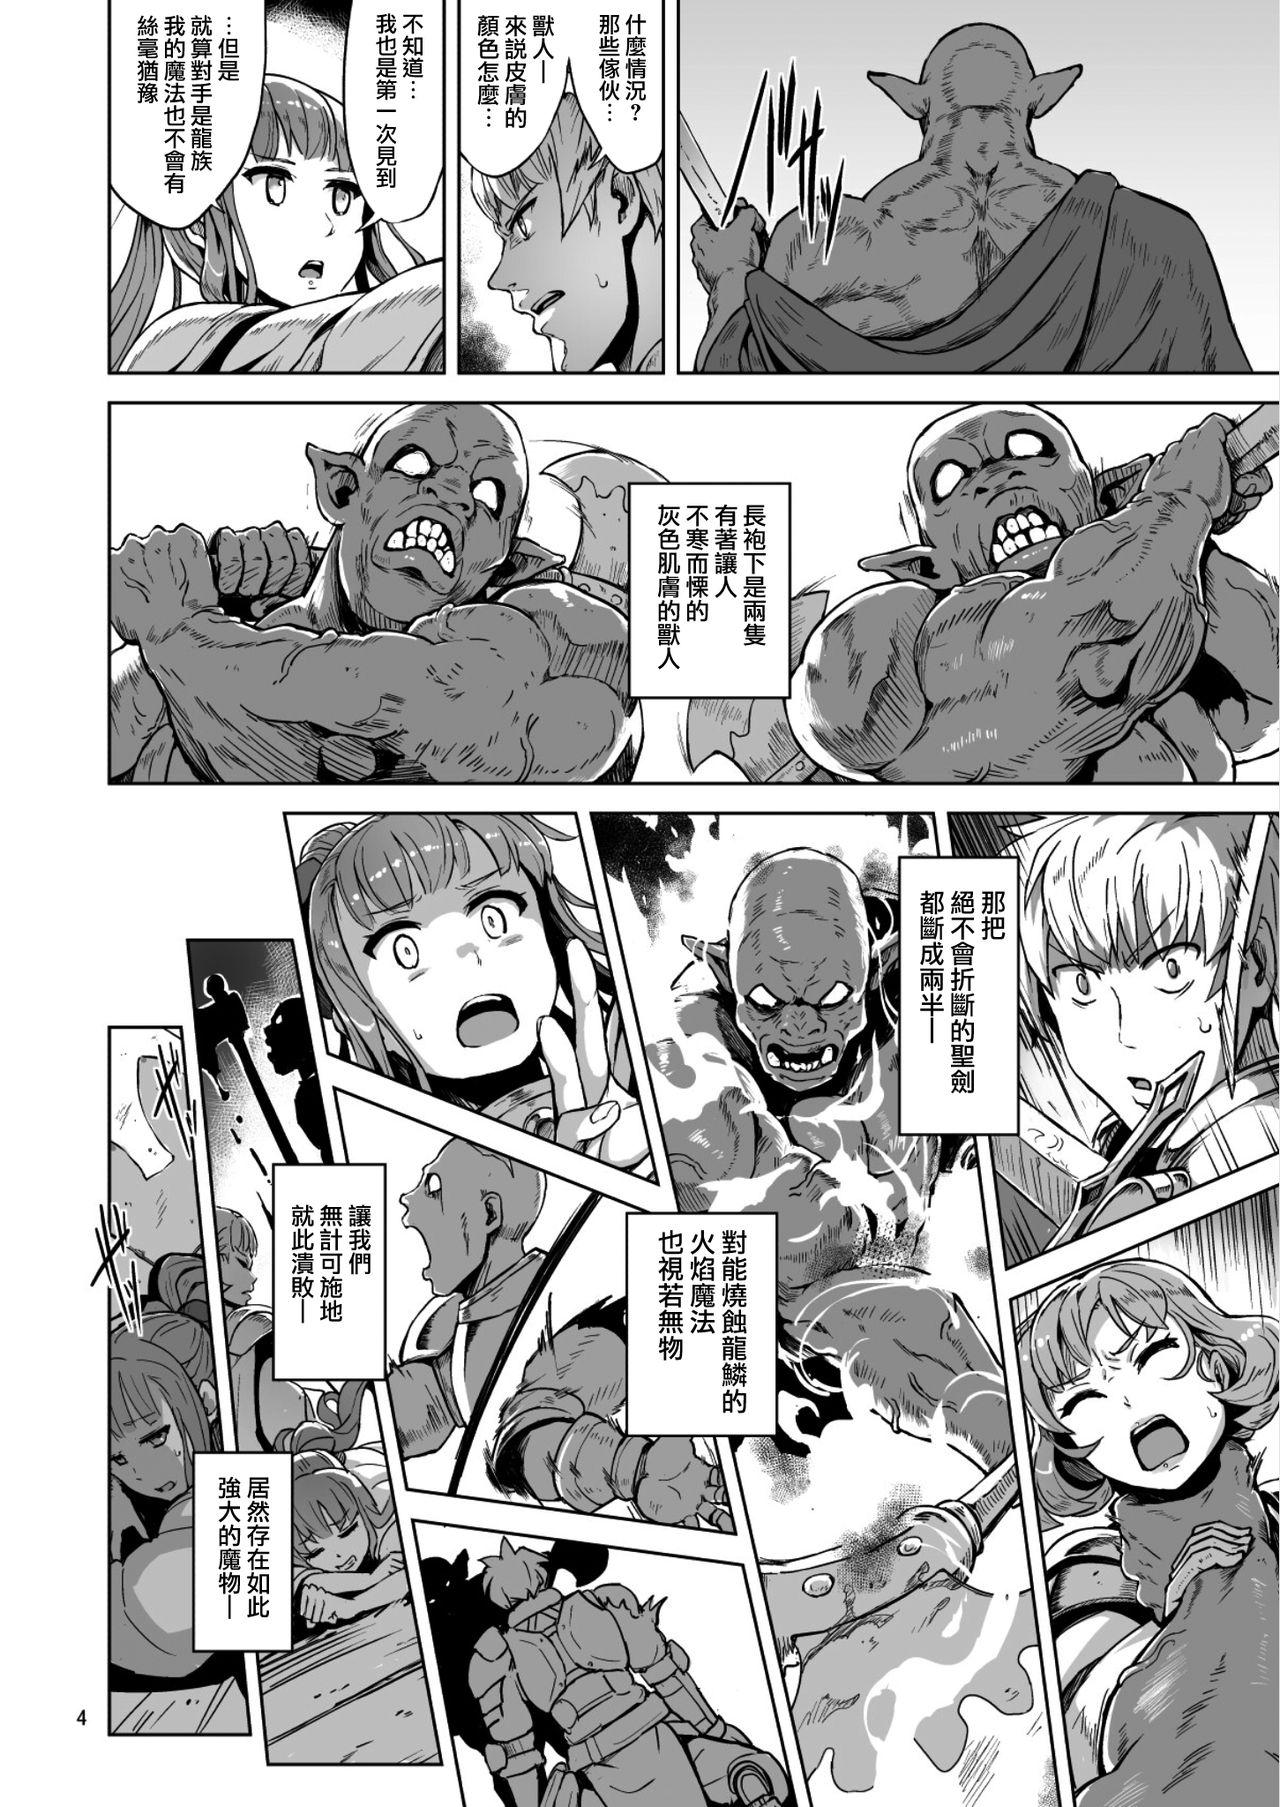 Sucks Lust Ritual Seinaru Ikenie - Original 19yo - Page 5